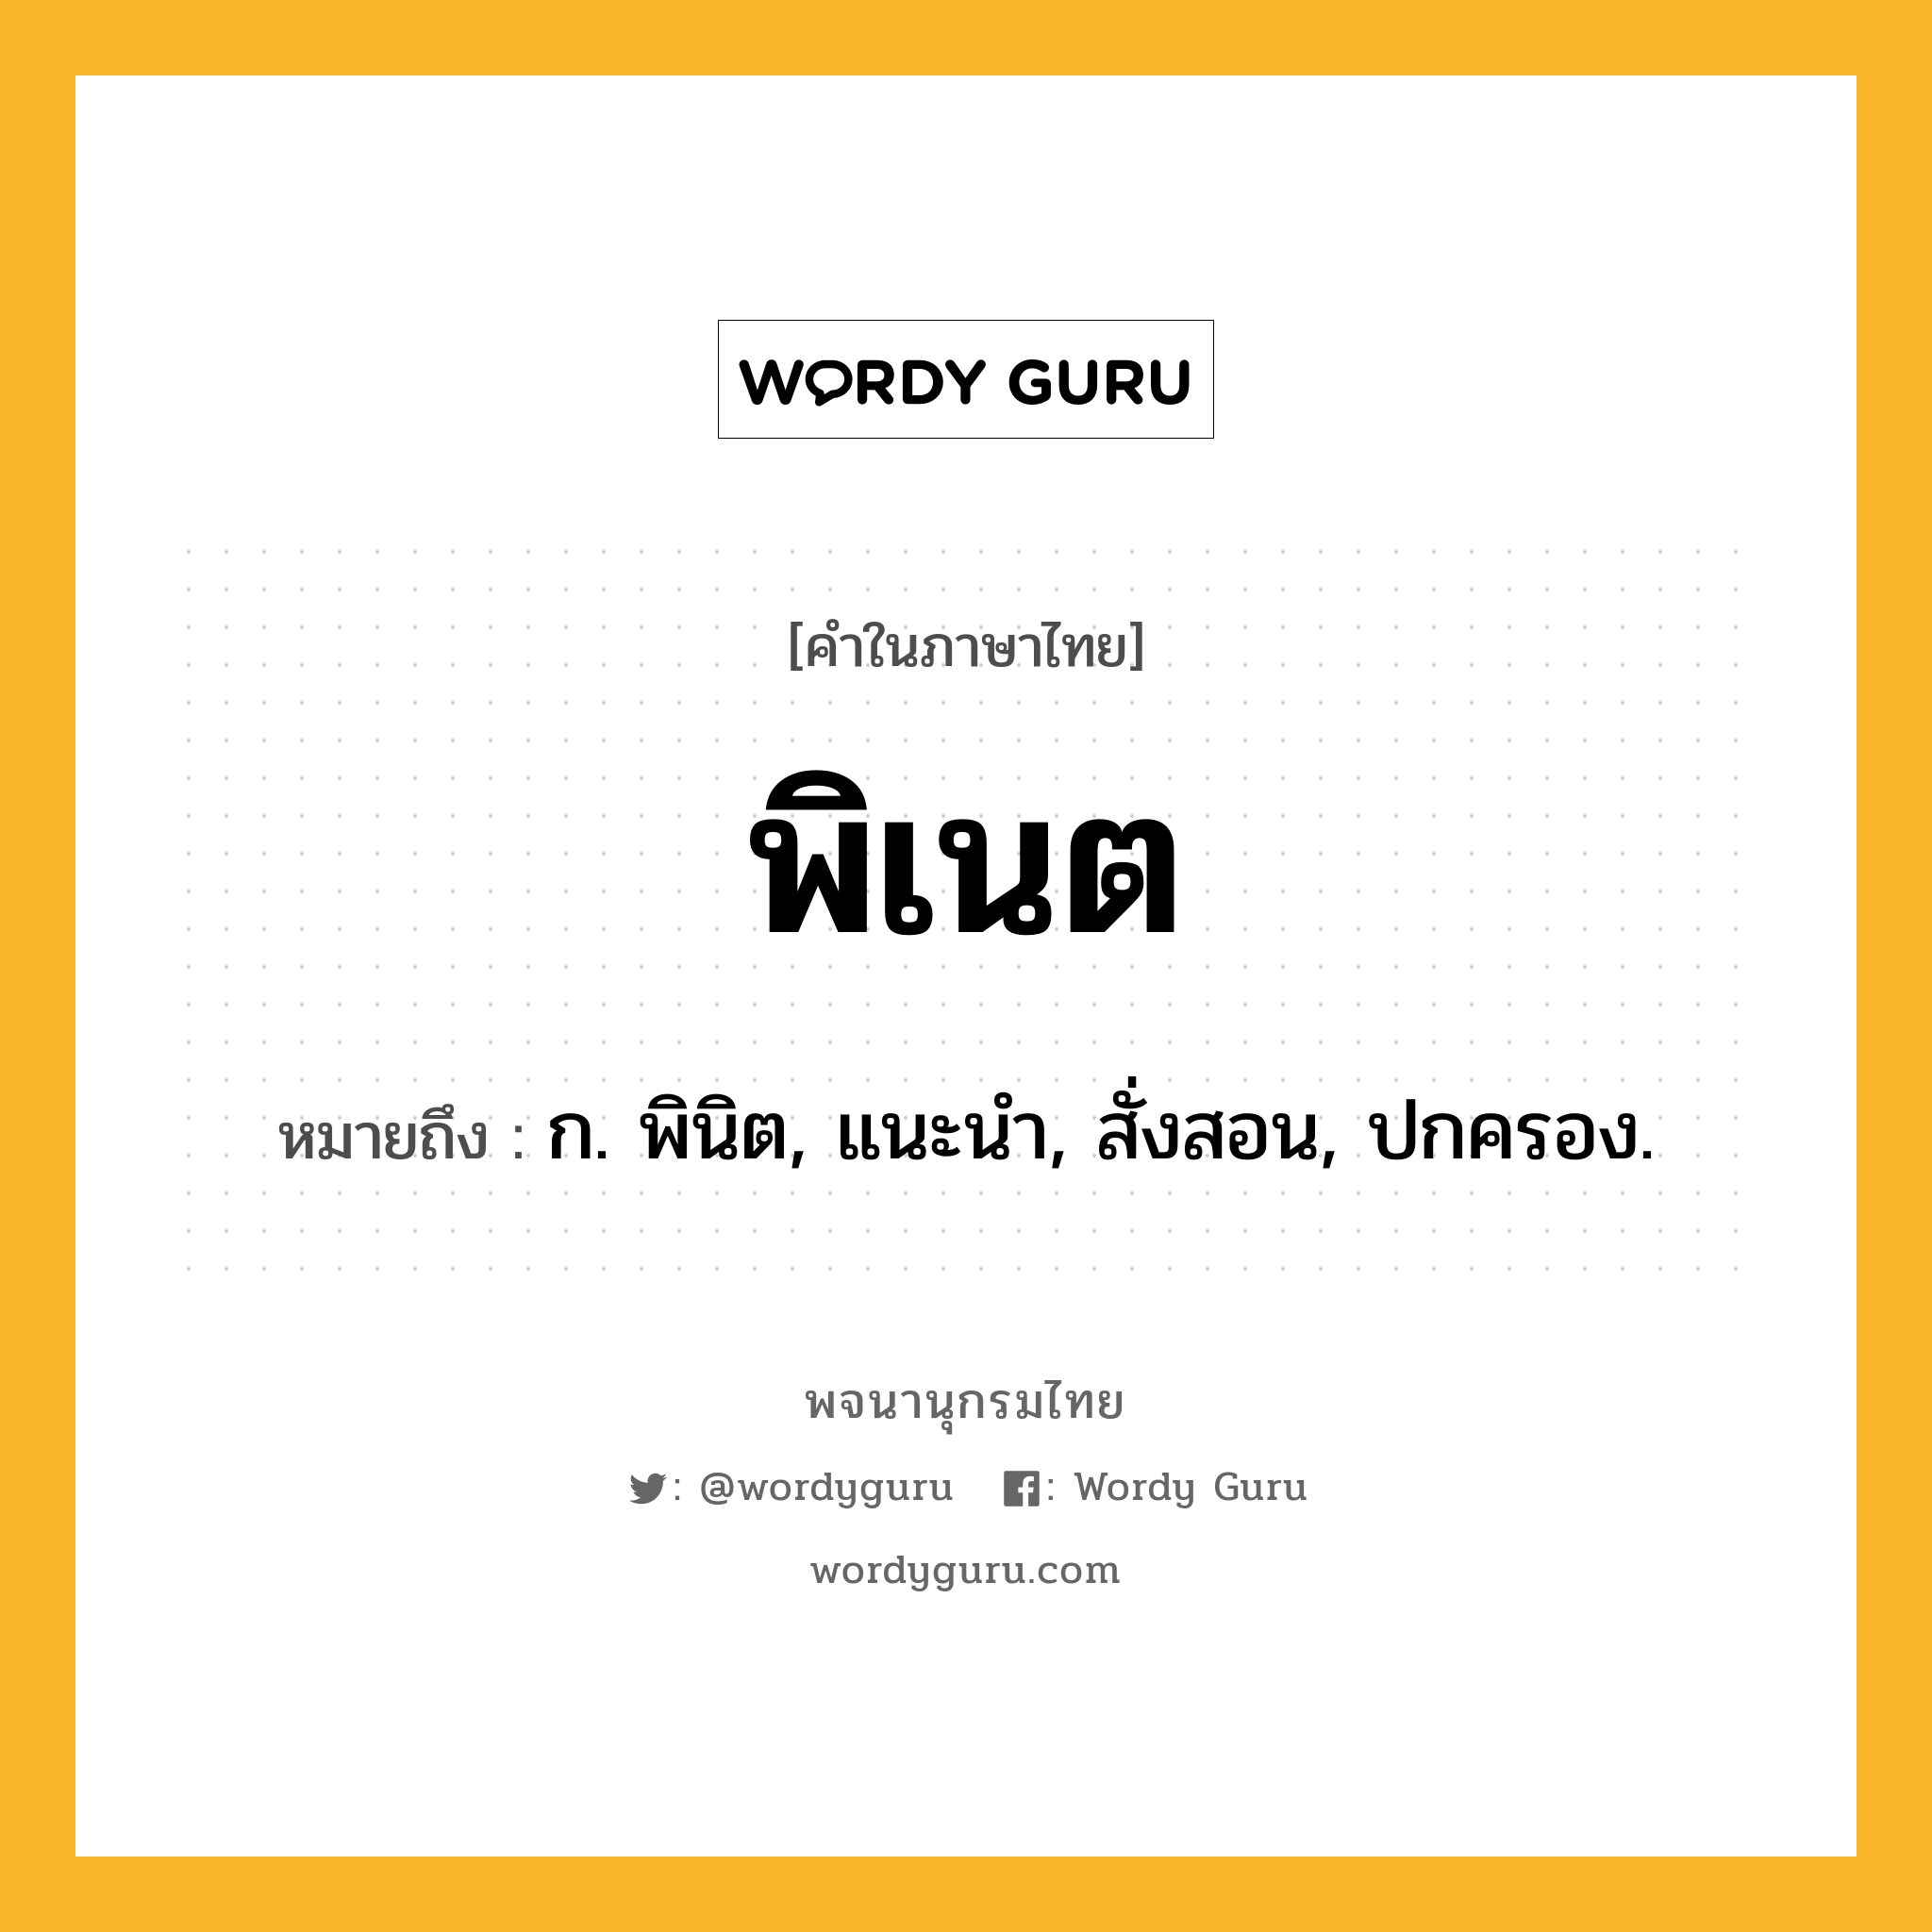 พิเนต ความหมาย หมายถึงอะไร?, คำในภาษาไทย พิเนต หมายถึง ก. พินิต, แนะนํา, สั่งสอน, ปกครอง.